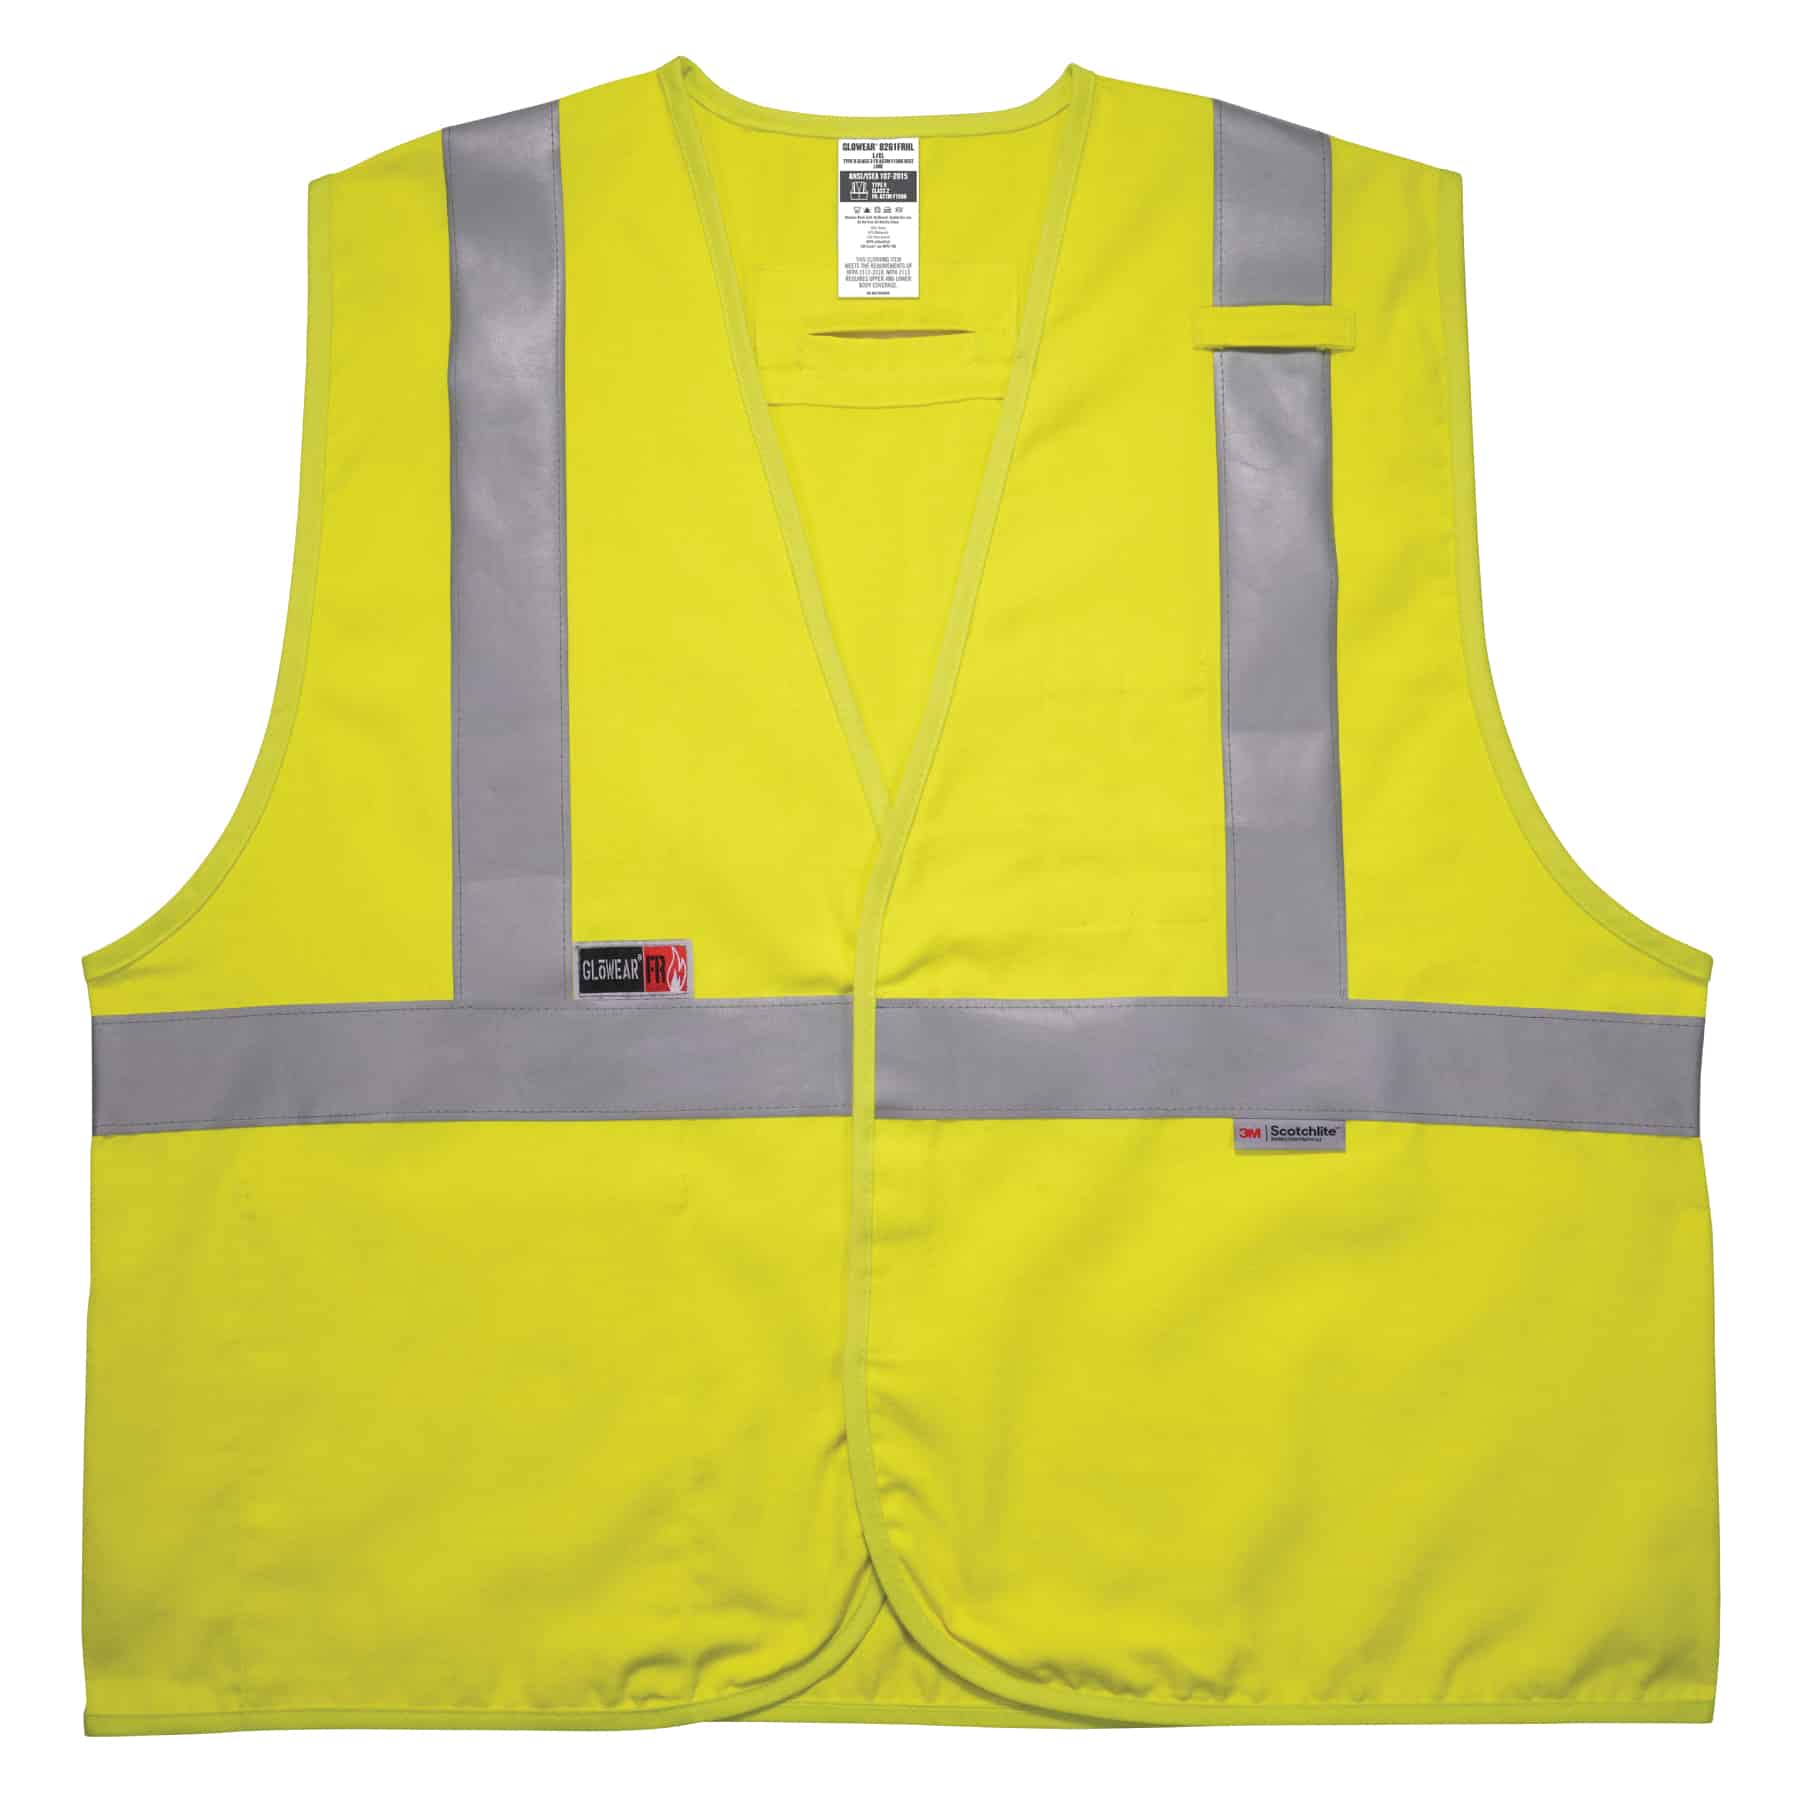 https://www.ergodyne.com/sites/default/files/product-images/21463-8261frhl-hi-vis-fr-safety-vest-front.jpg